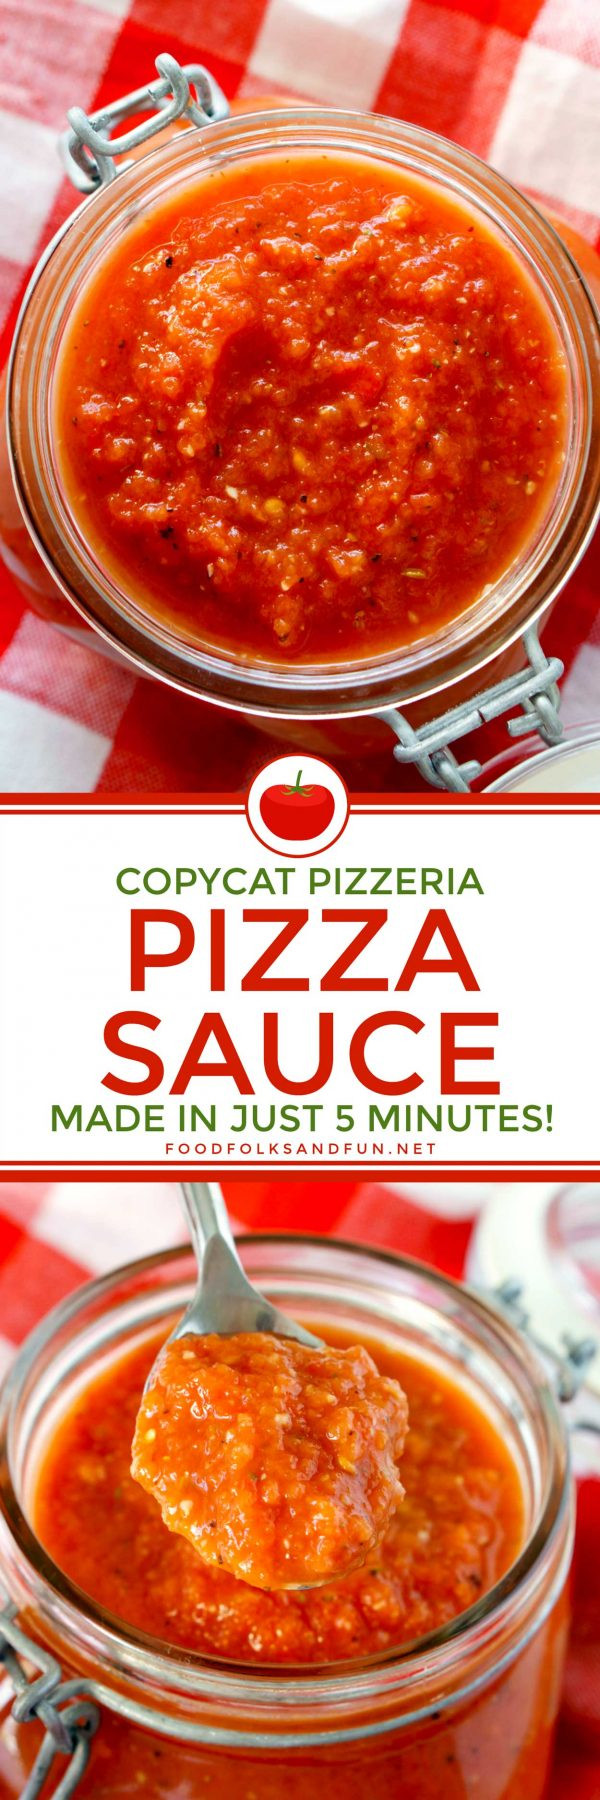 Recipe For Pizza Sauce
 Copycat Pizzeria Pizza Sauce Recipe • Food Folks and Fun